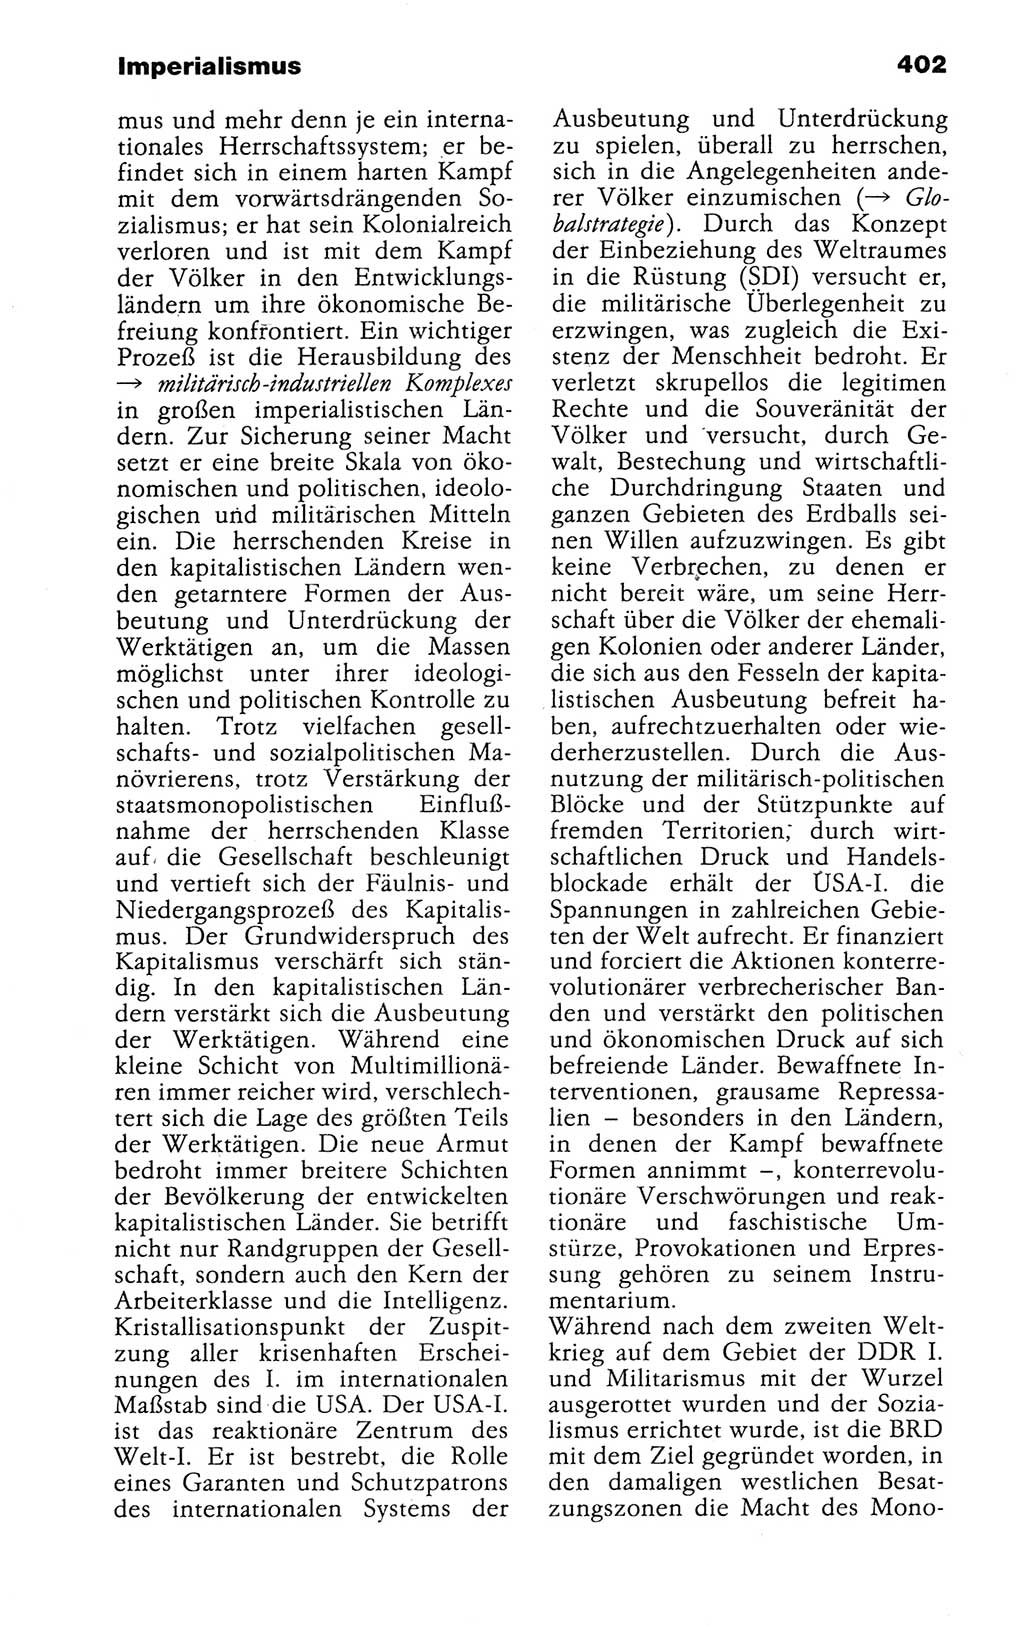 Kleines politisches Wörterbuch [Deutsche Demokratische Republik (DDR)] 1988, Seite 402 (Kl. pol. Wb. DDR 1988, S. 402)